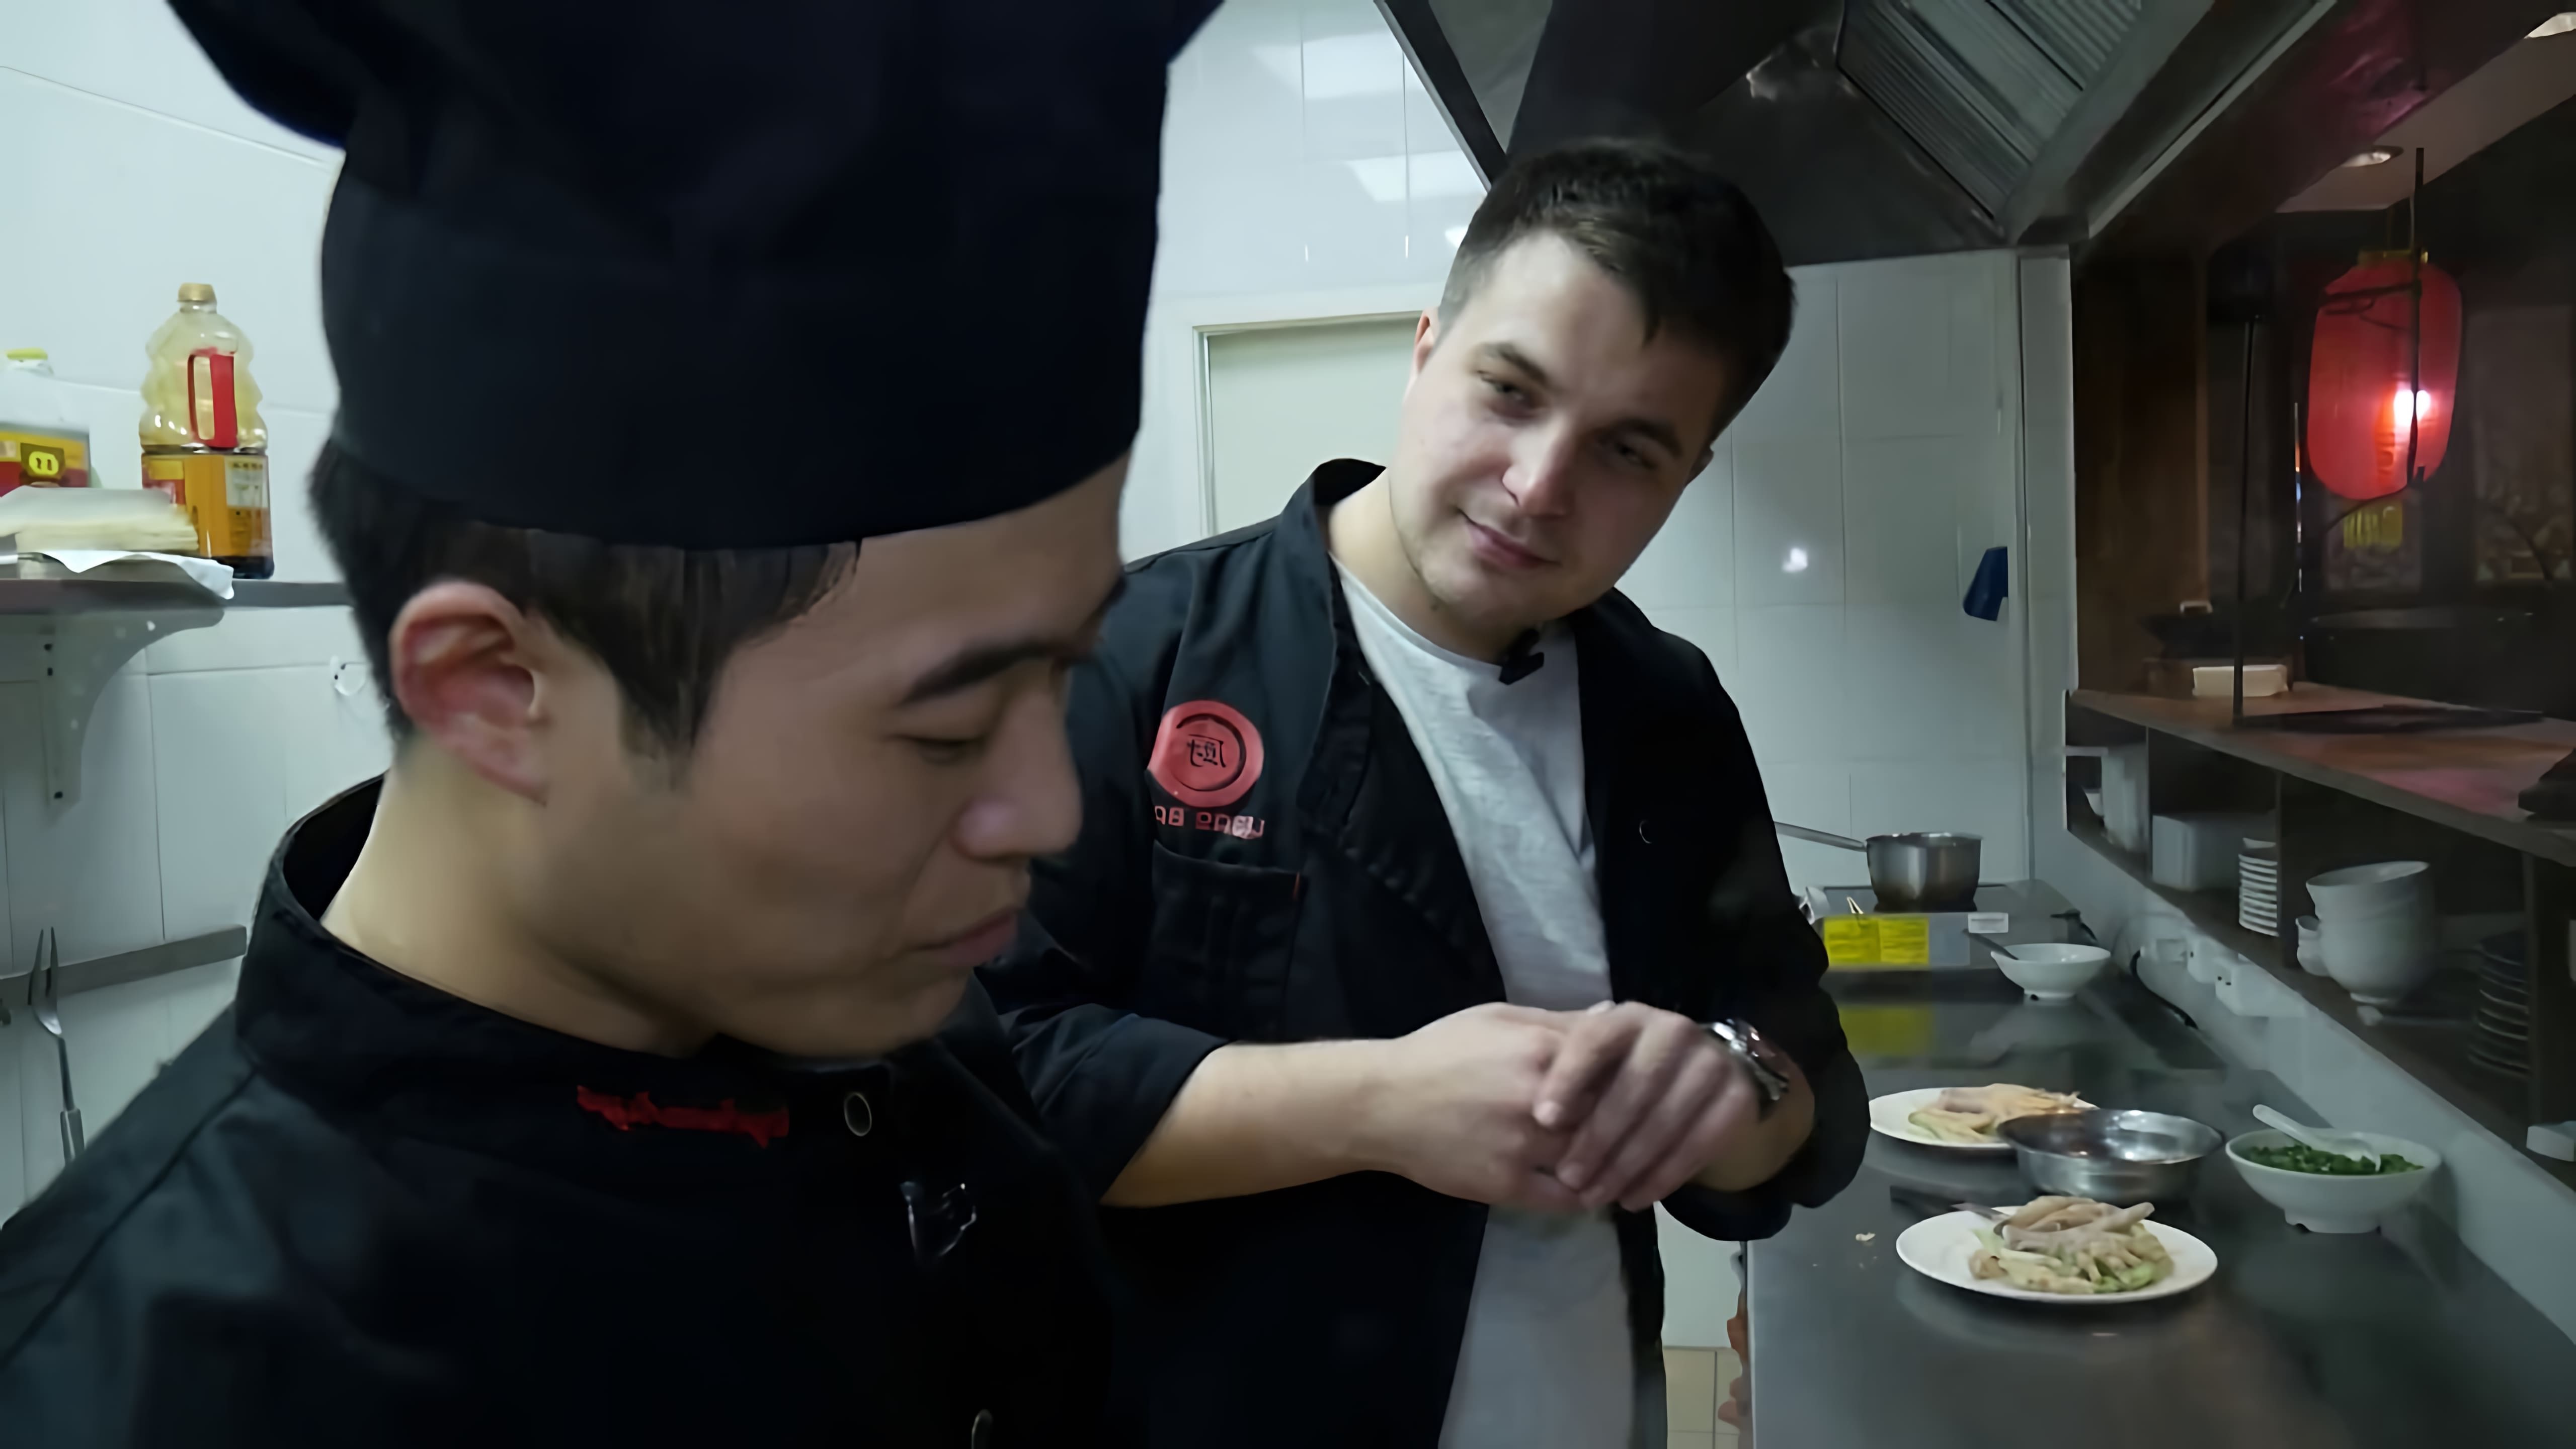 В этом видео рассказывается о приготовлении куриных лапок, популярного блюда в Азии